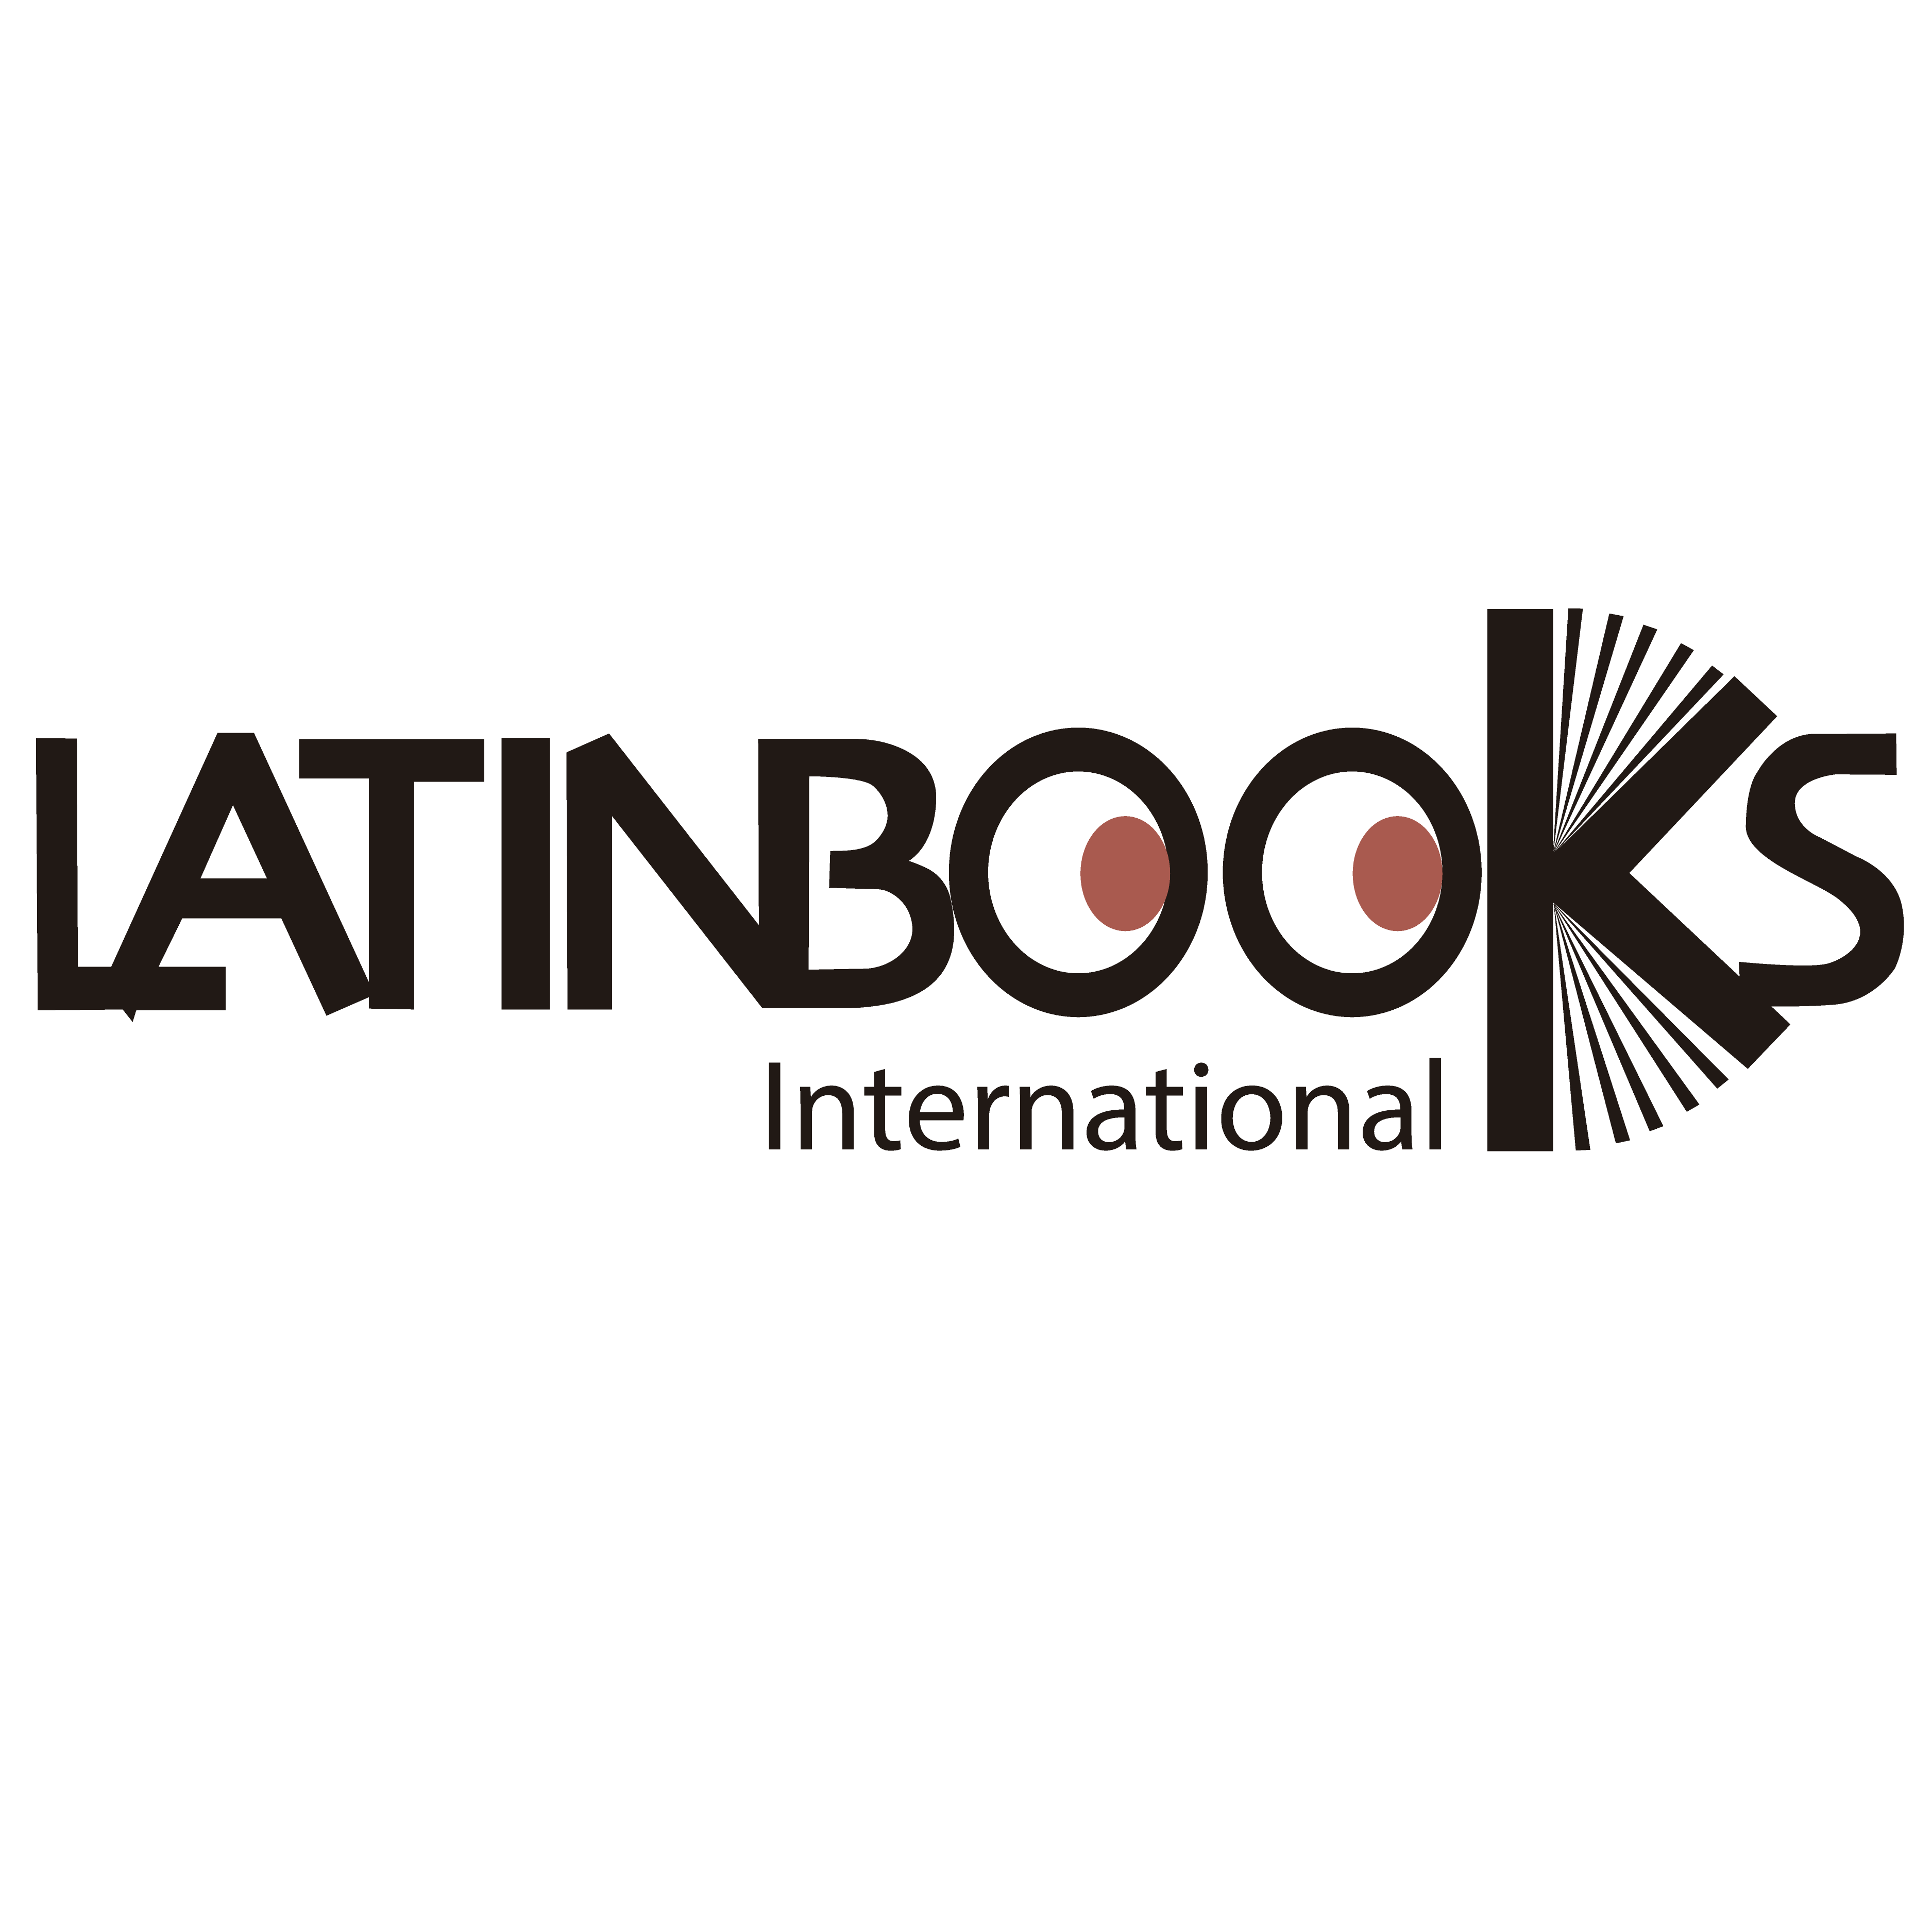 Latinbooks